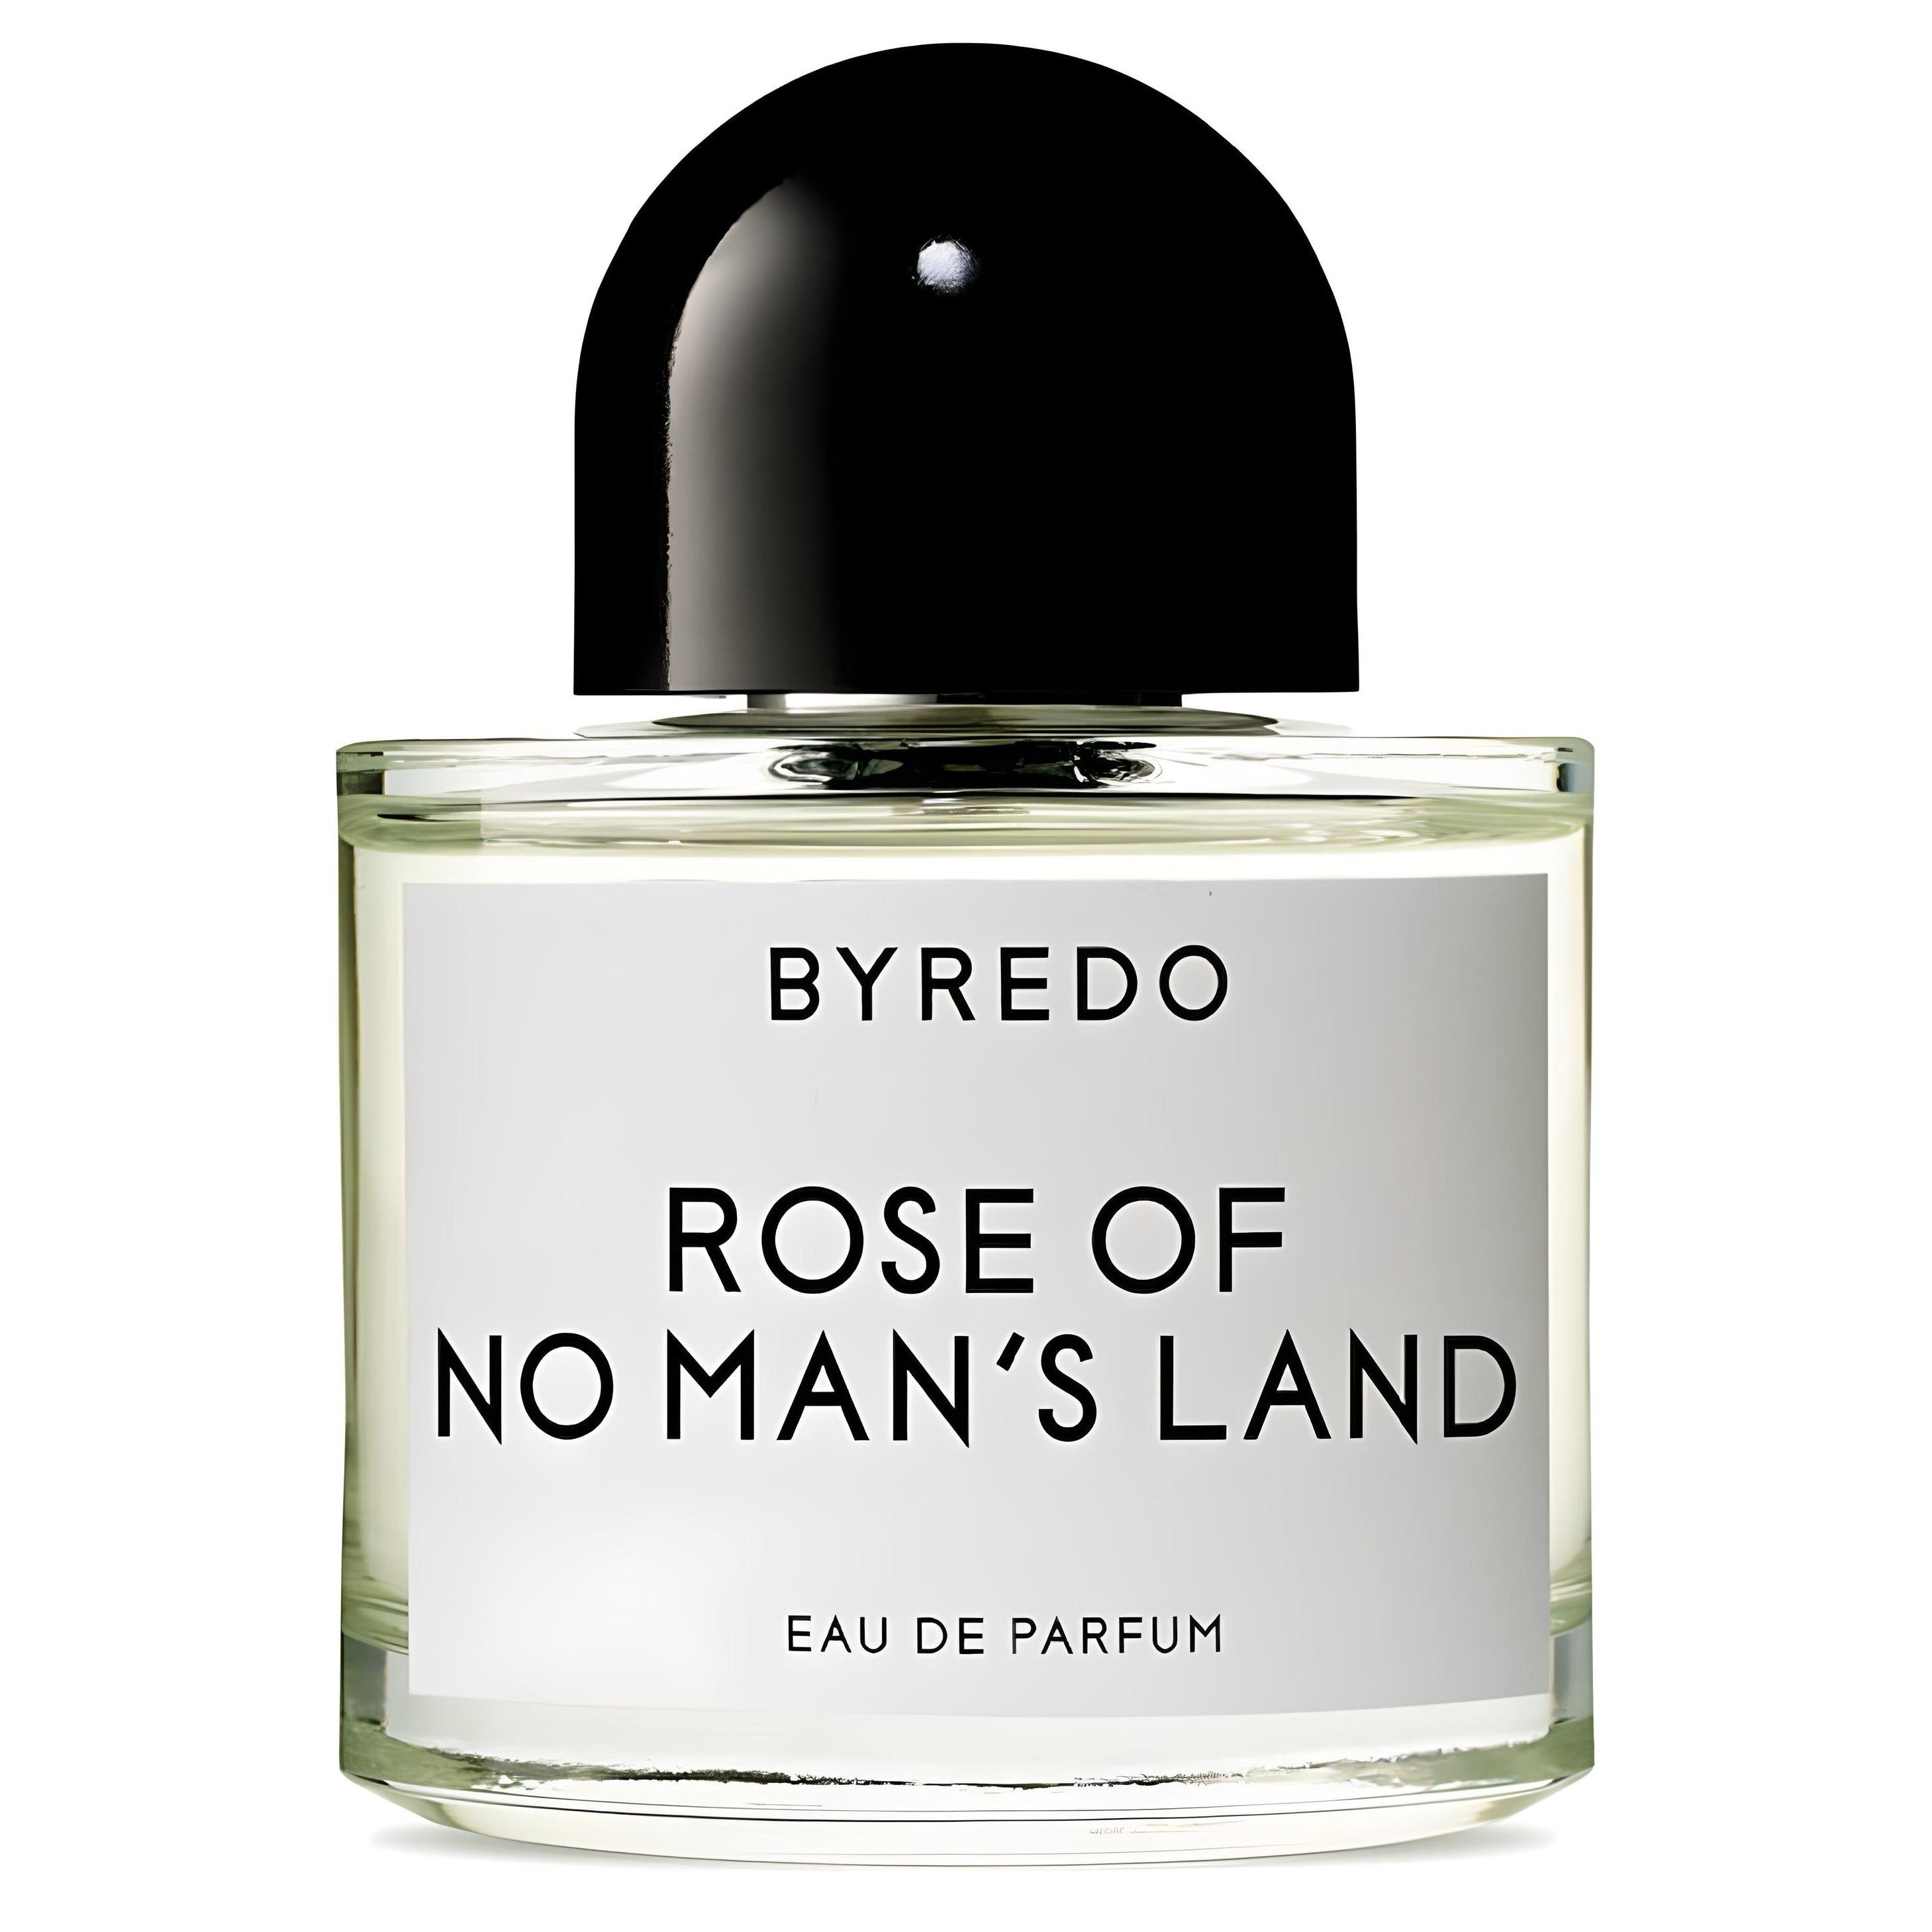 Rose Of No Man's Land Eau de Parfum Eau de Parfum BYREDO Parfum   